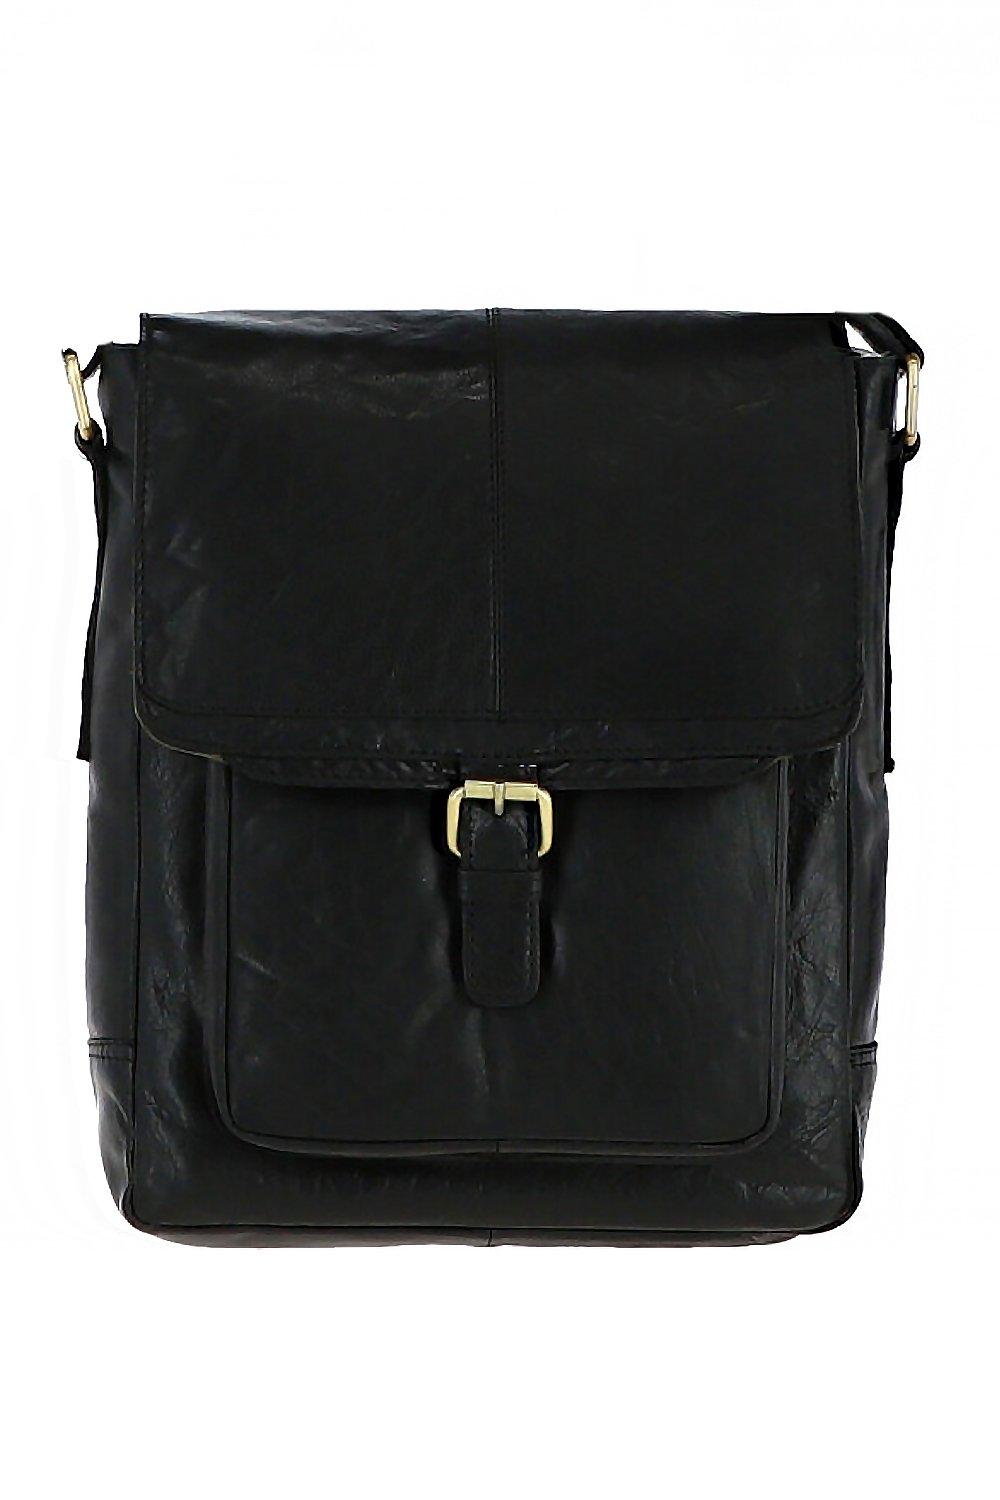 Дорожная сумка из винтажной кожи среднего размера Ashwood Leather, черный сумка планшет повседневная натуральная кожа вмещает а4 внутренний карман регулируемый ремень черный